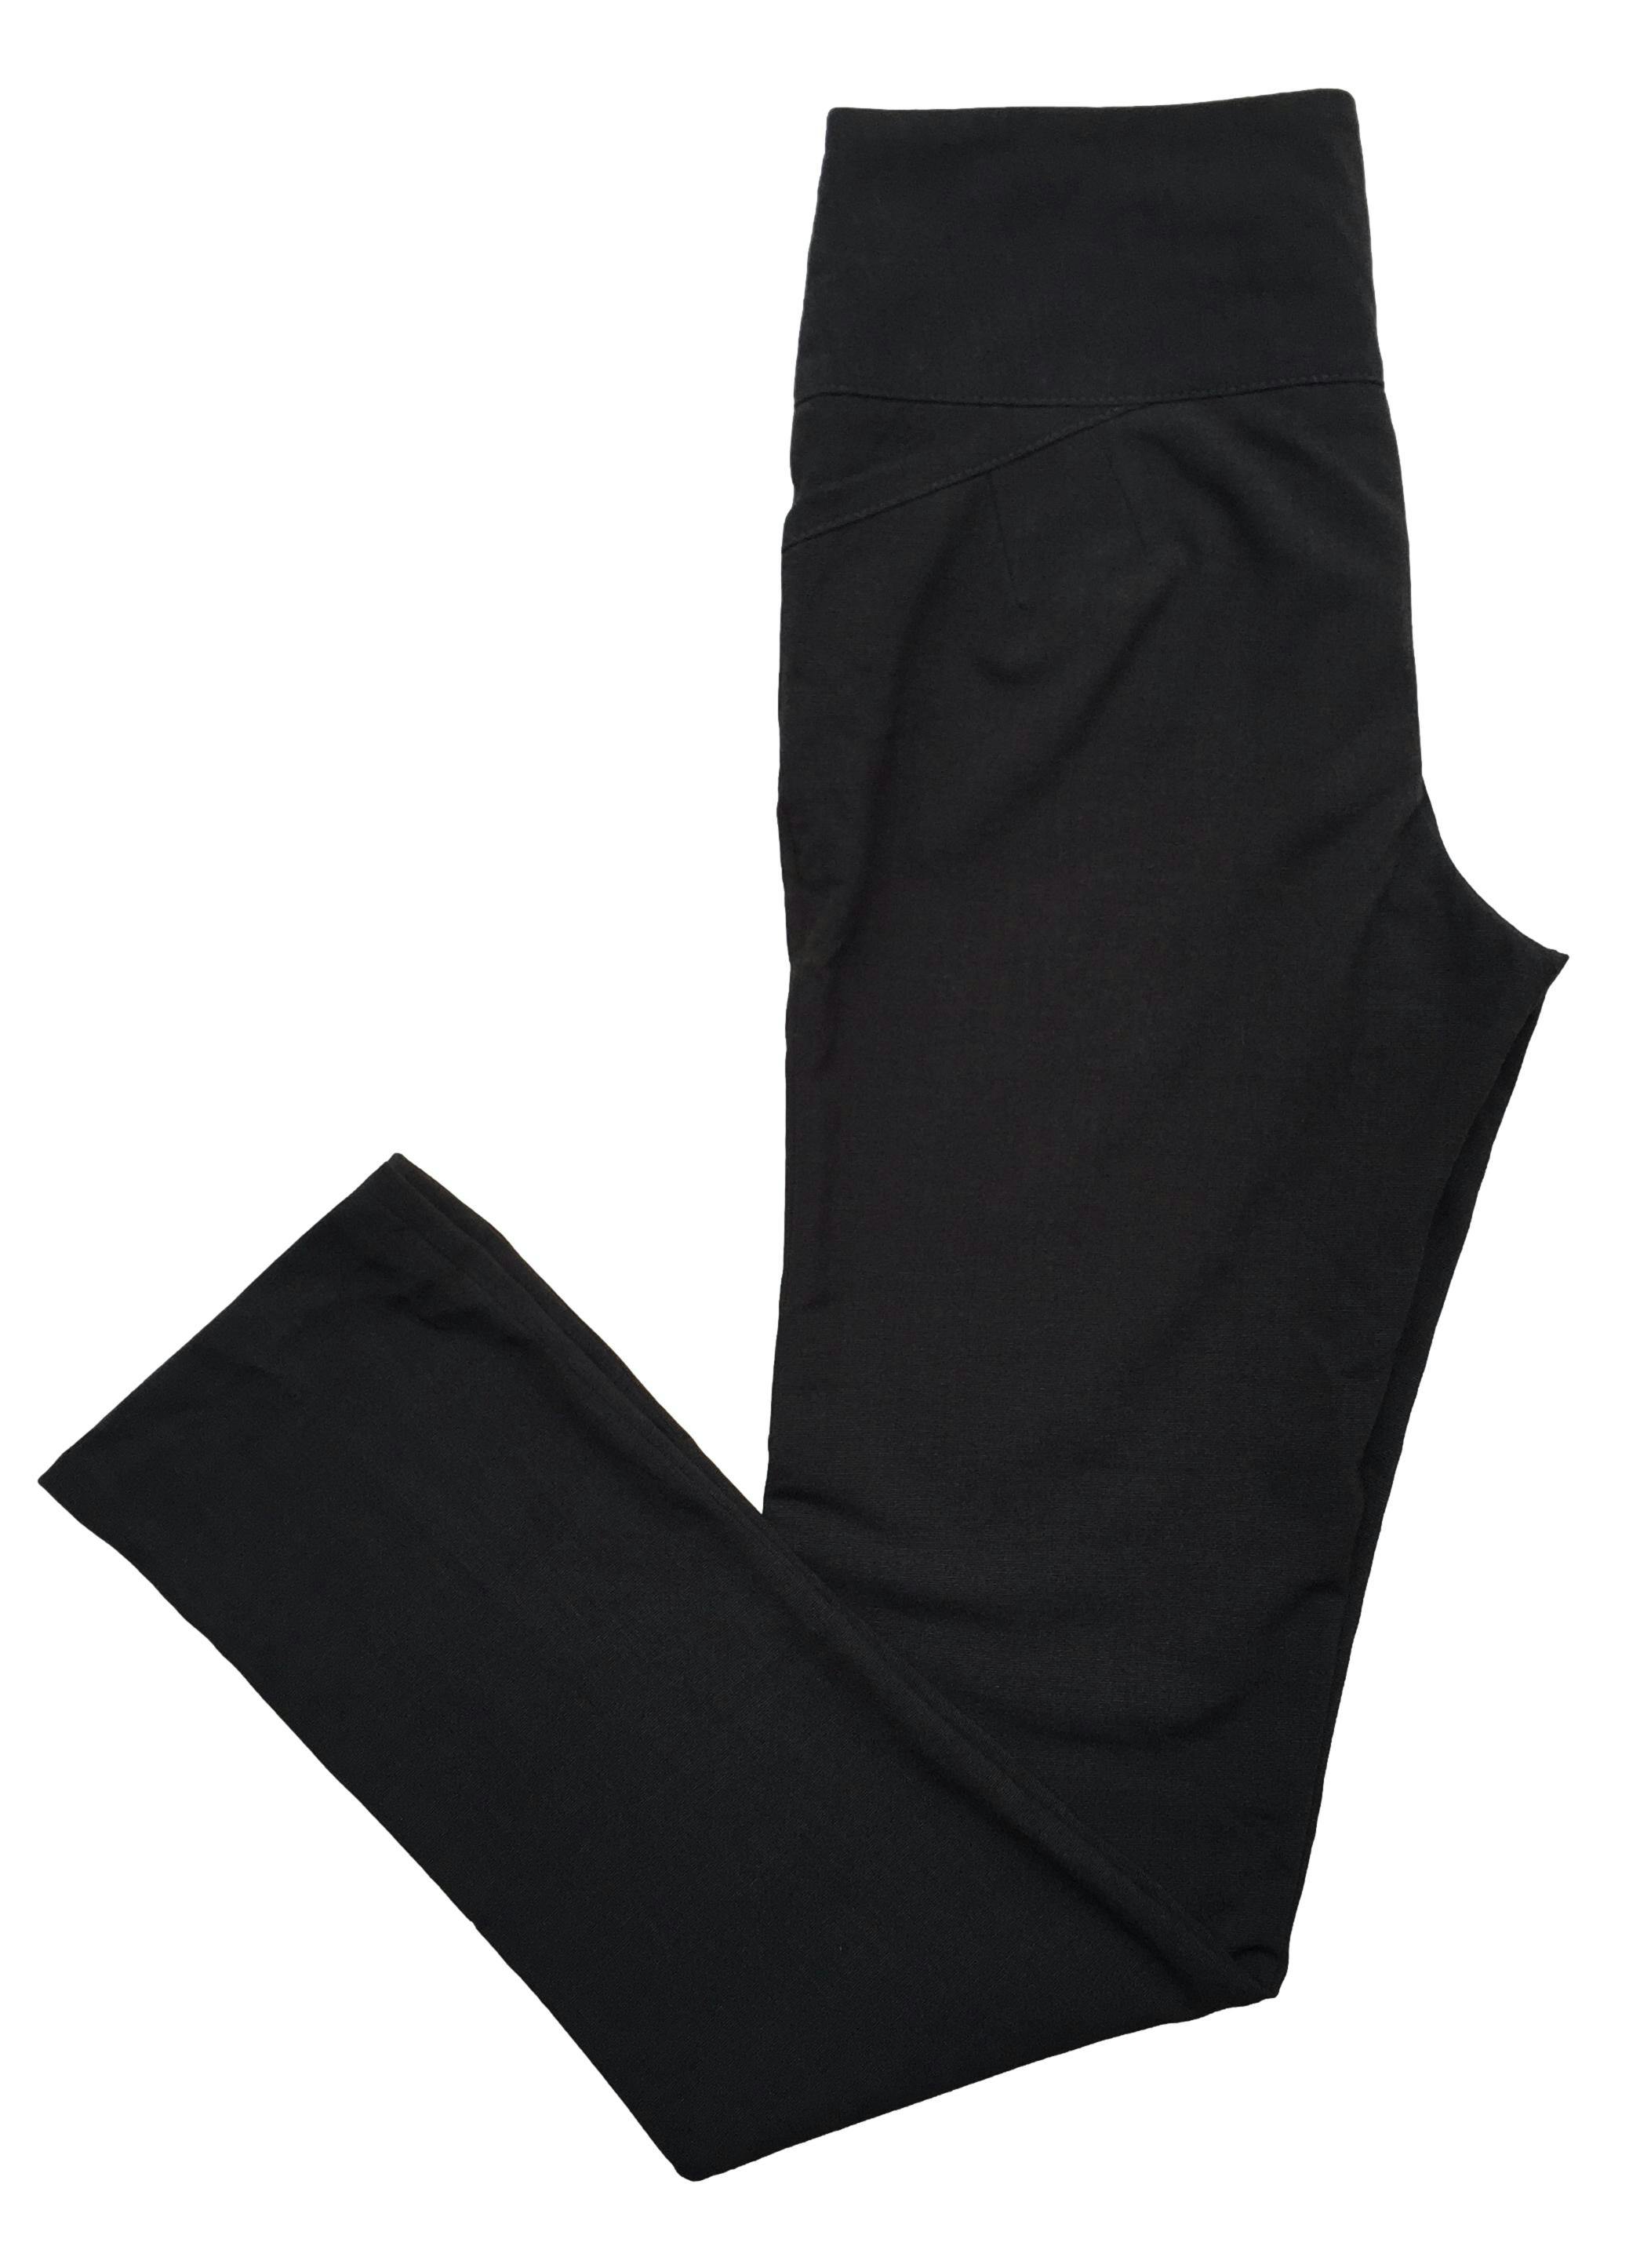 Pantalón de vestir negro, pretina ancha tres botones y bolsillos delanteros. Cintura: 70cm, Tiro: 27cm, Largo: 103cm